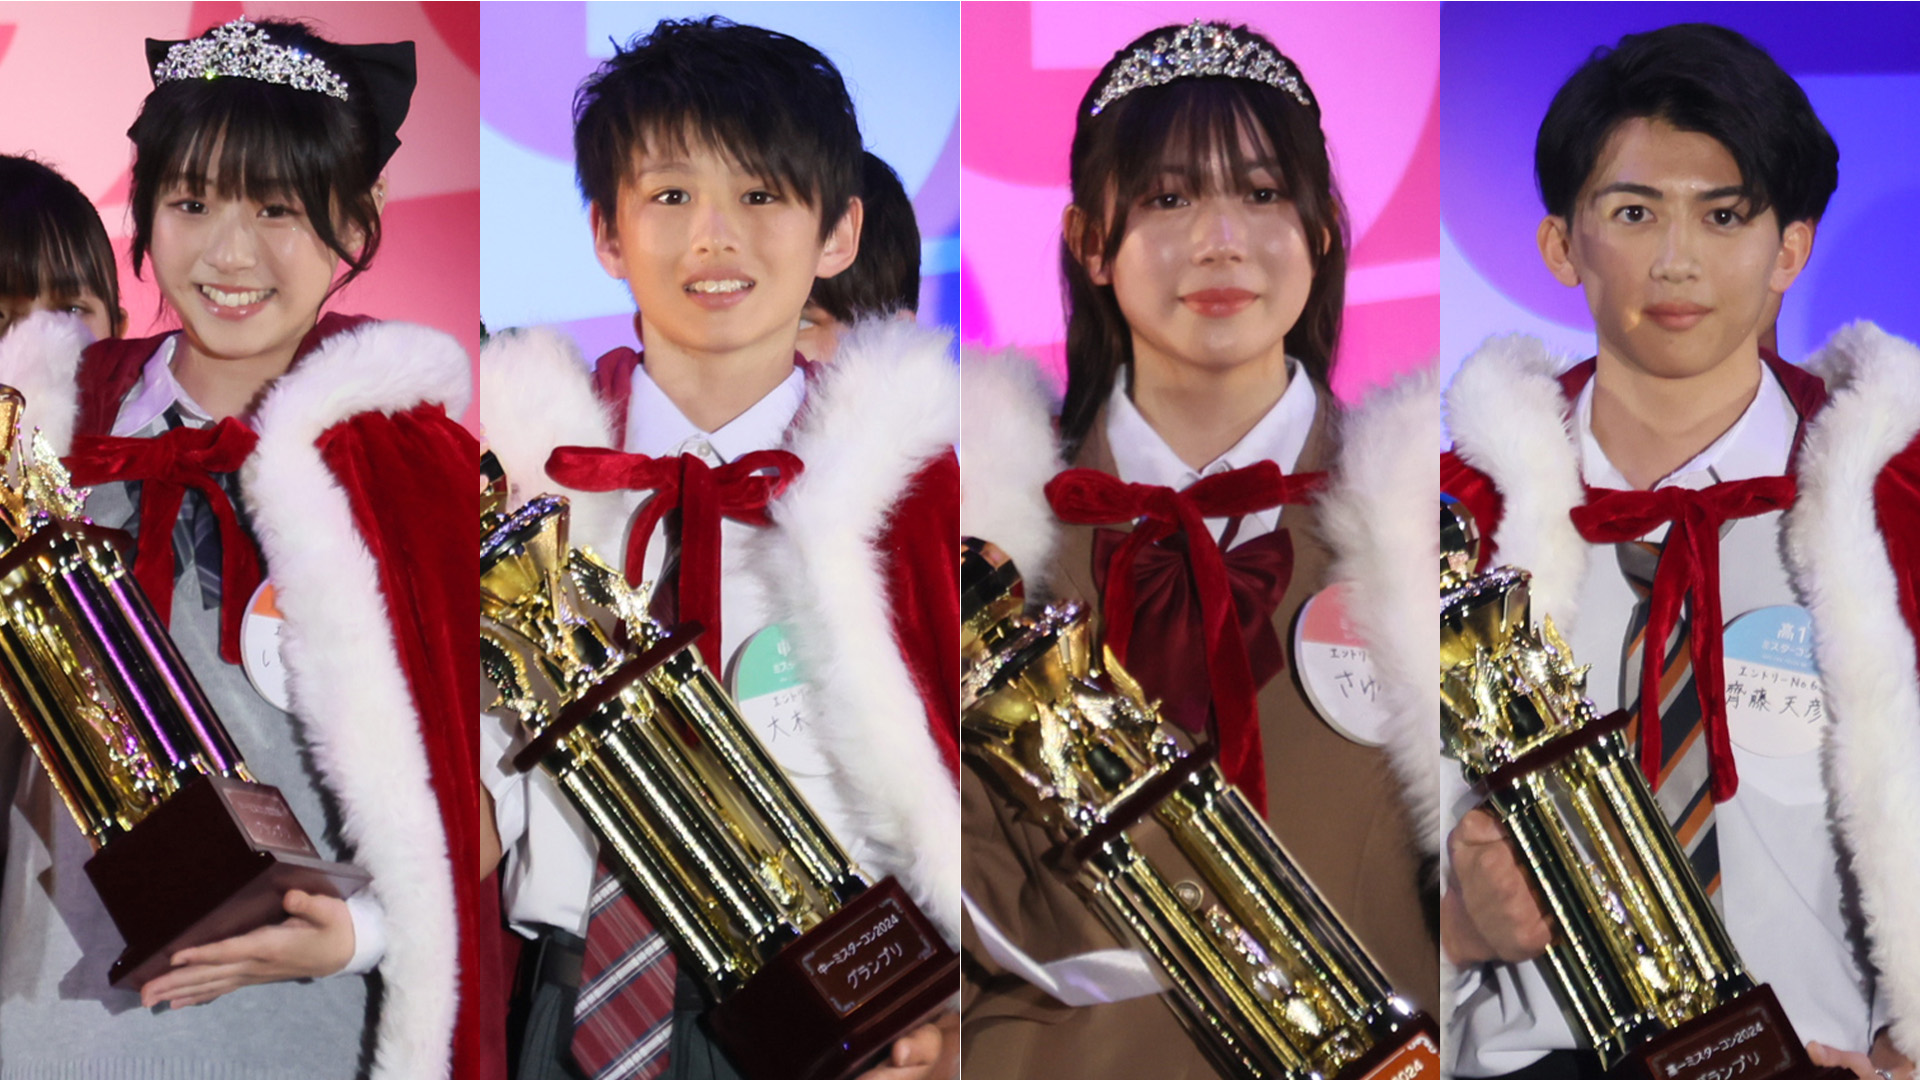 “日本一”の1年生を決めるコンテストのグランプリが発表されました